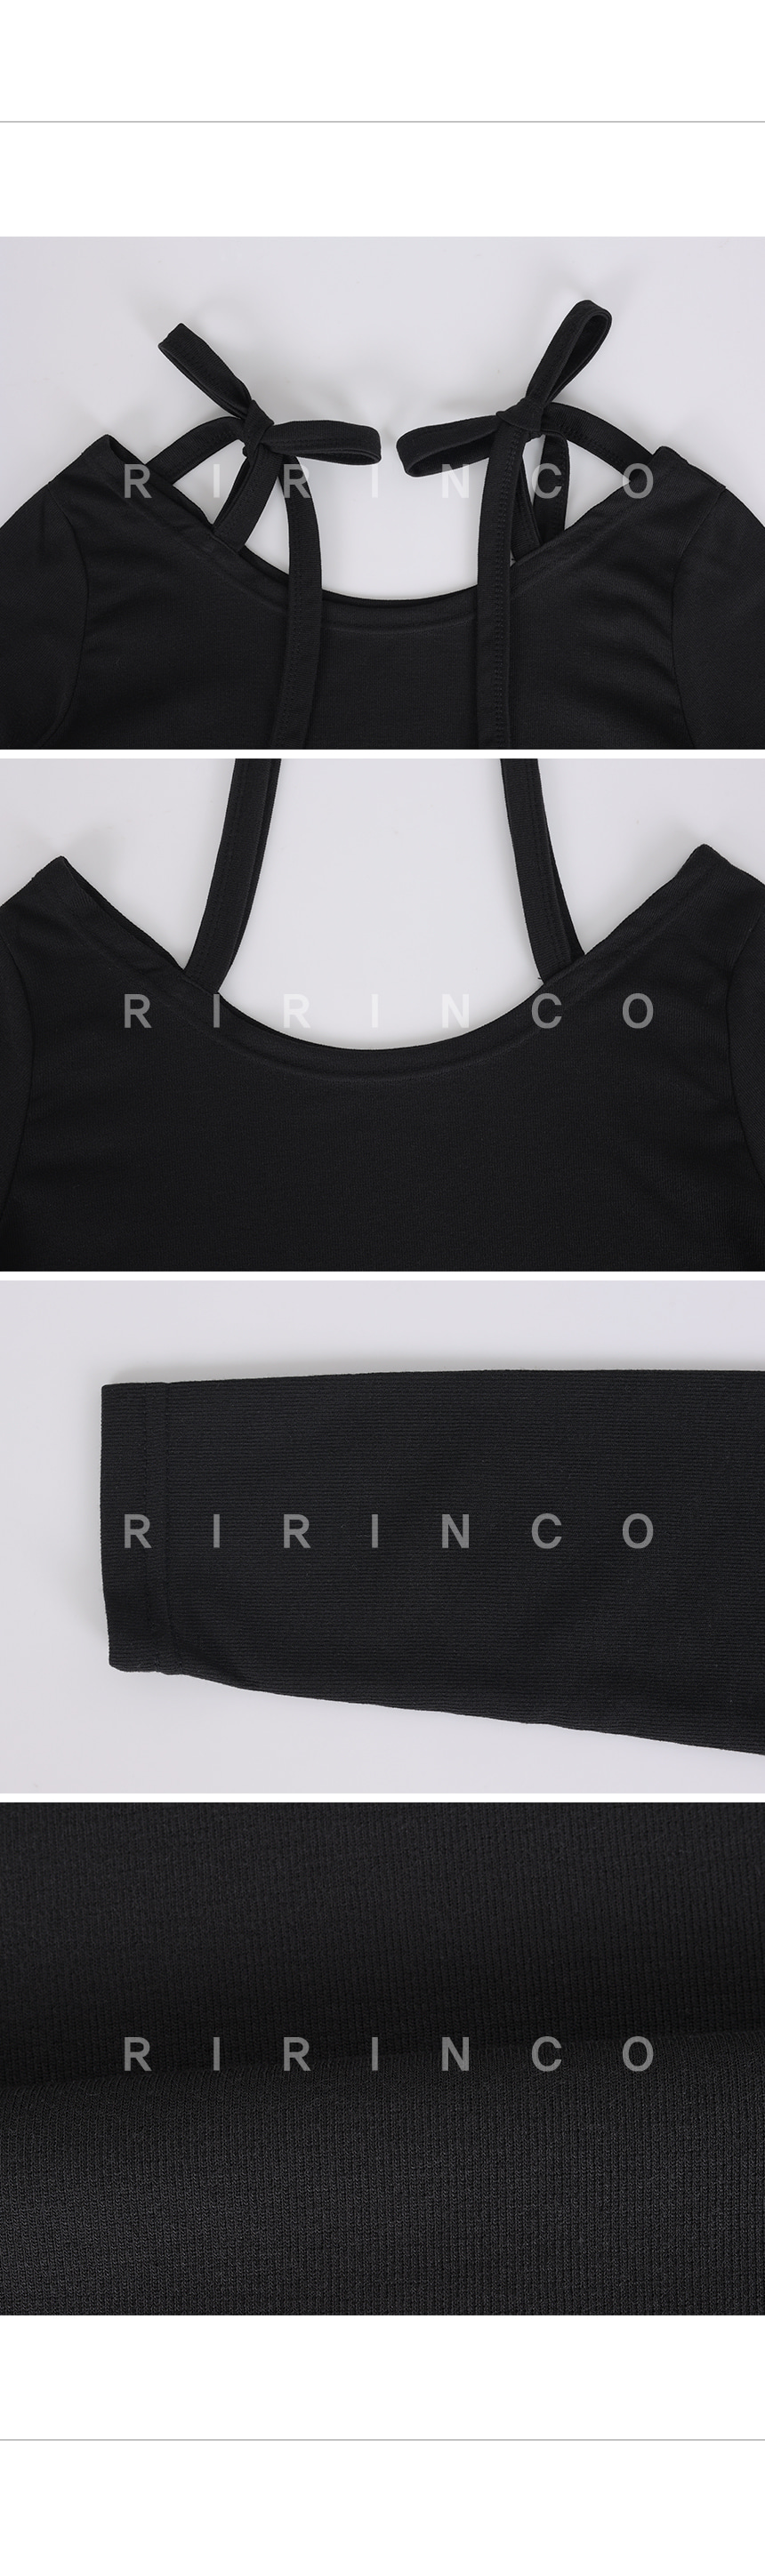 RIRINCO リボンストラップオフショルダーTシャツ